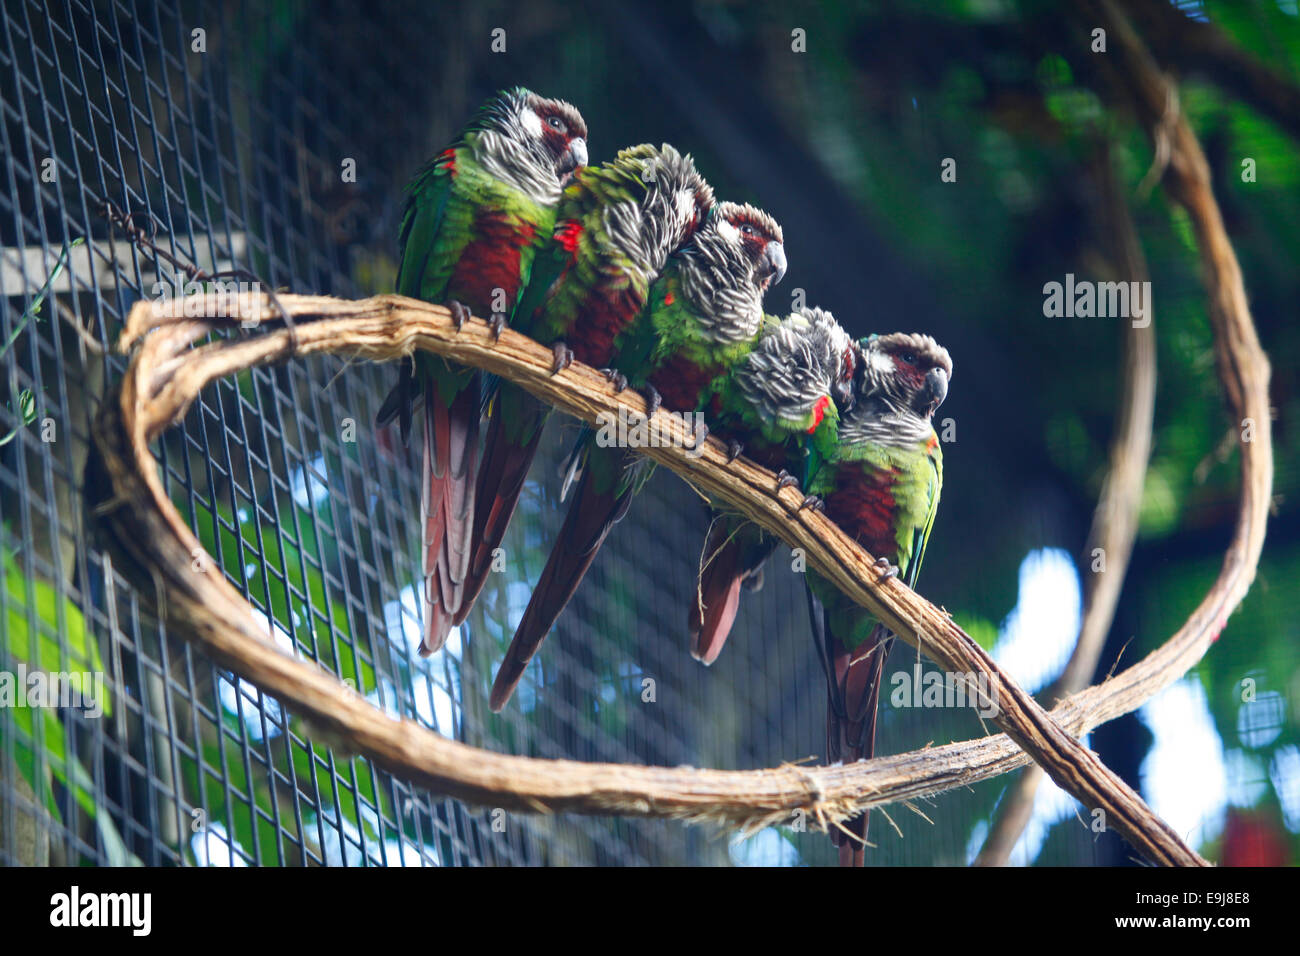 Bunte exotische Vögel. Parque das Aves (Vogelpark), Foz do Iguaçu, Brasilien. Stockfoto